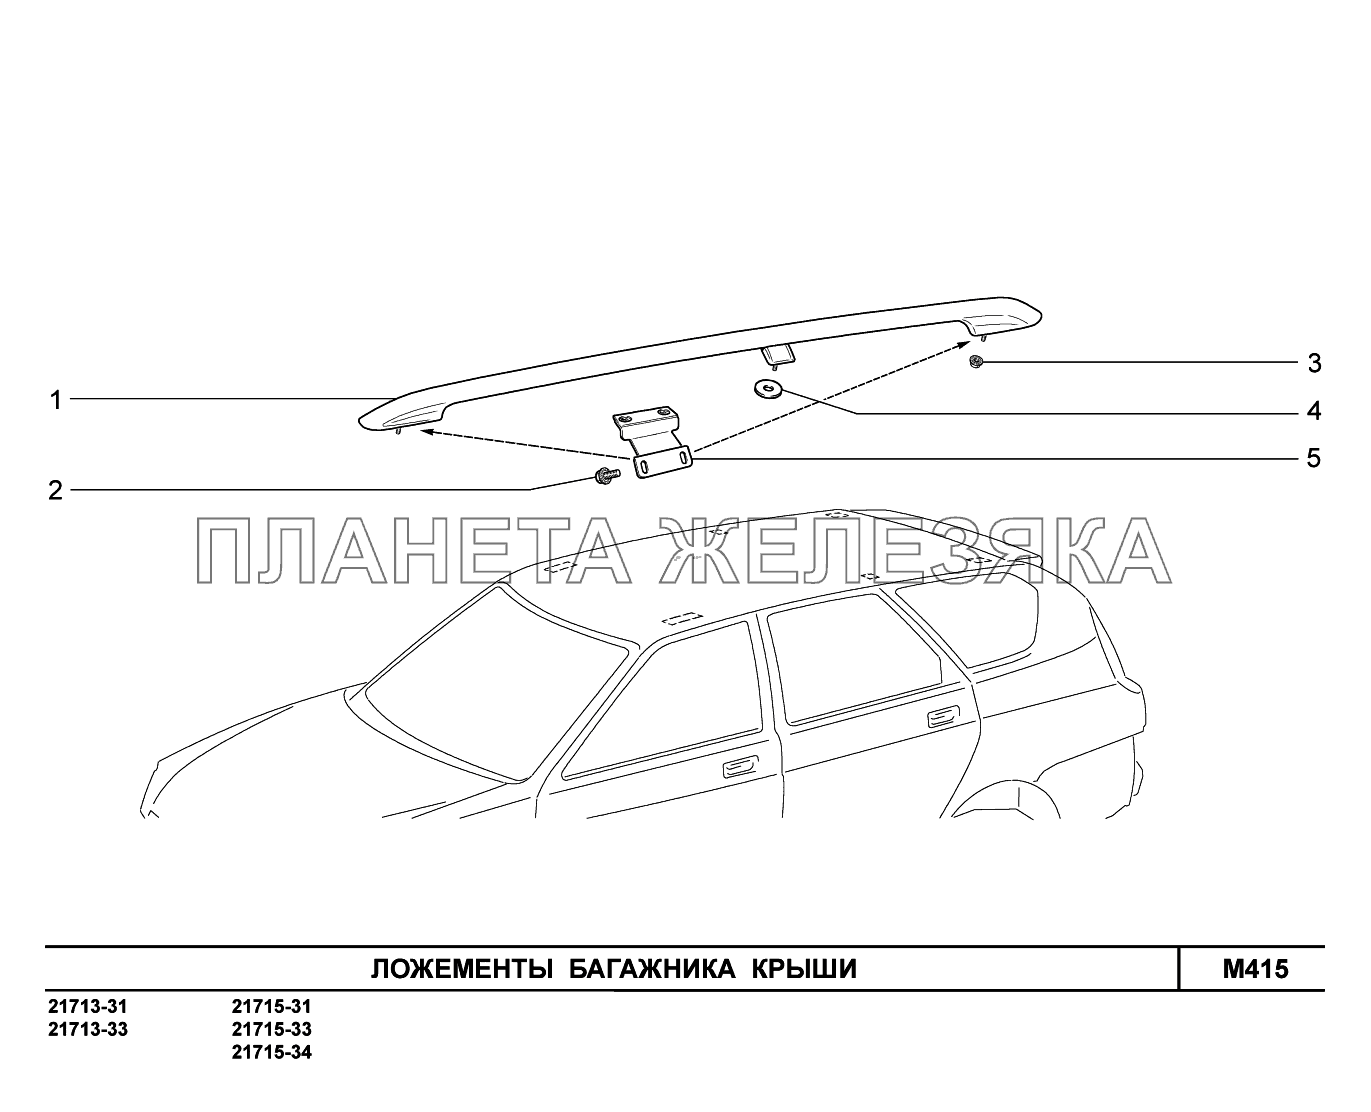 M415. Ложементы багажника крыши ВАЗ-2170 